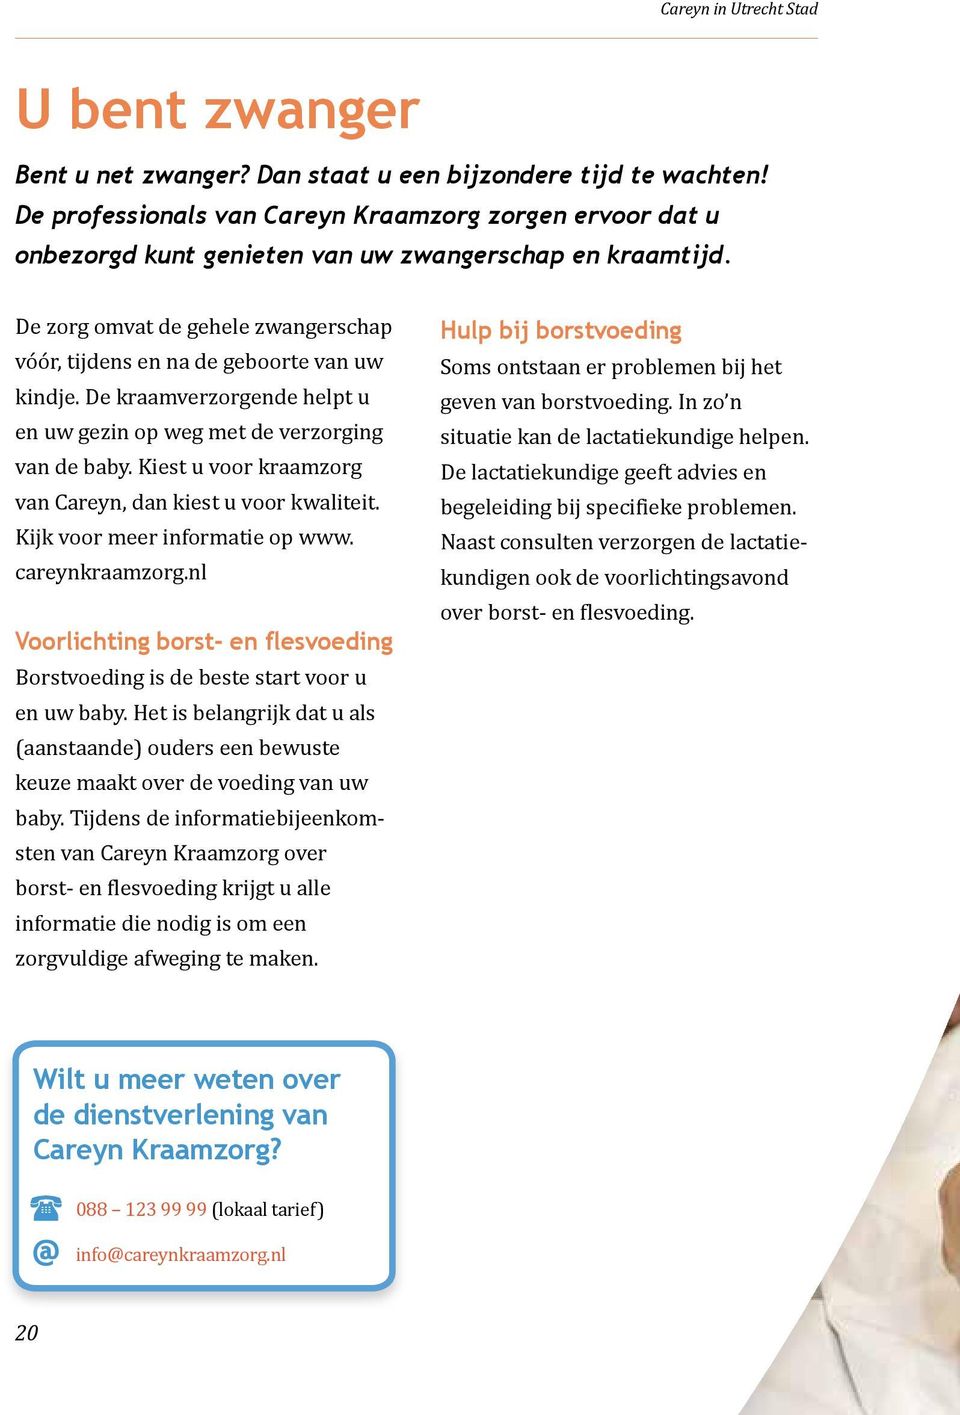 Kiest u voor kraamzorg van Careyn, dan kiest u voor kwaliteit. Kijk voor meer informatie op www. careynkraamzorg.nl Voorlichting borst- en flesvoeding Borstvoeding is de beste start voor u en uw baby.